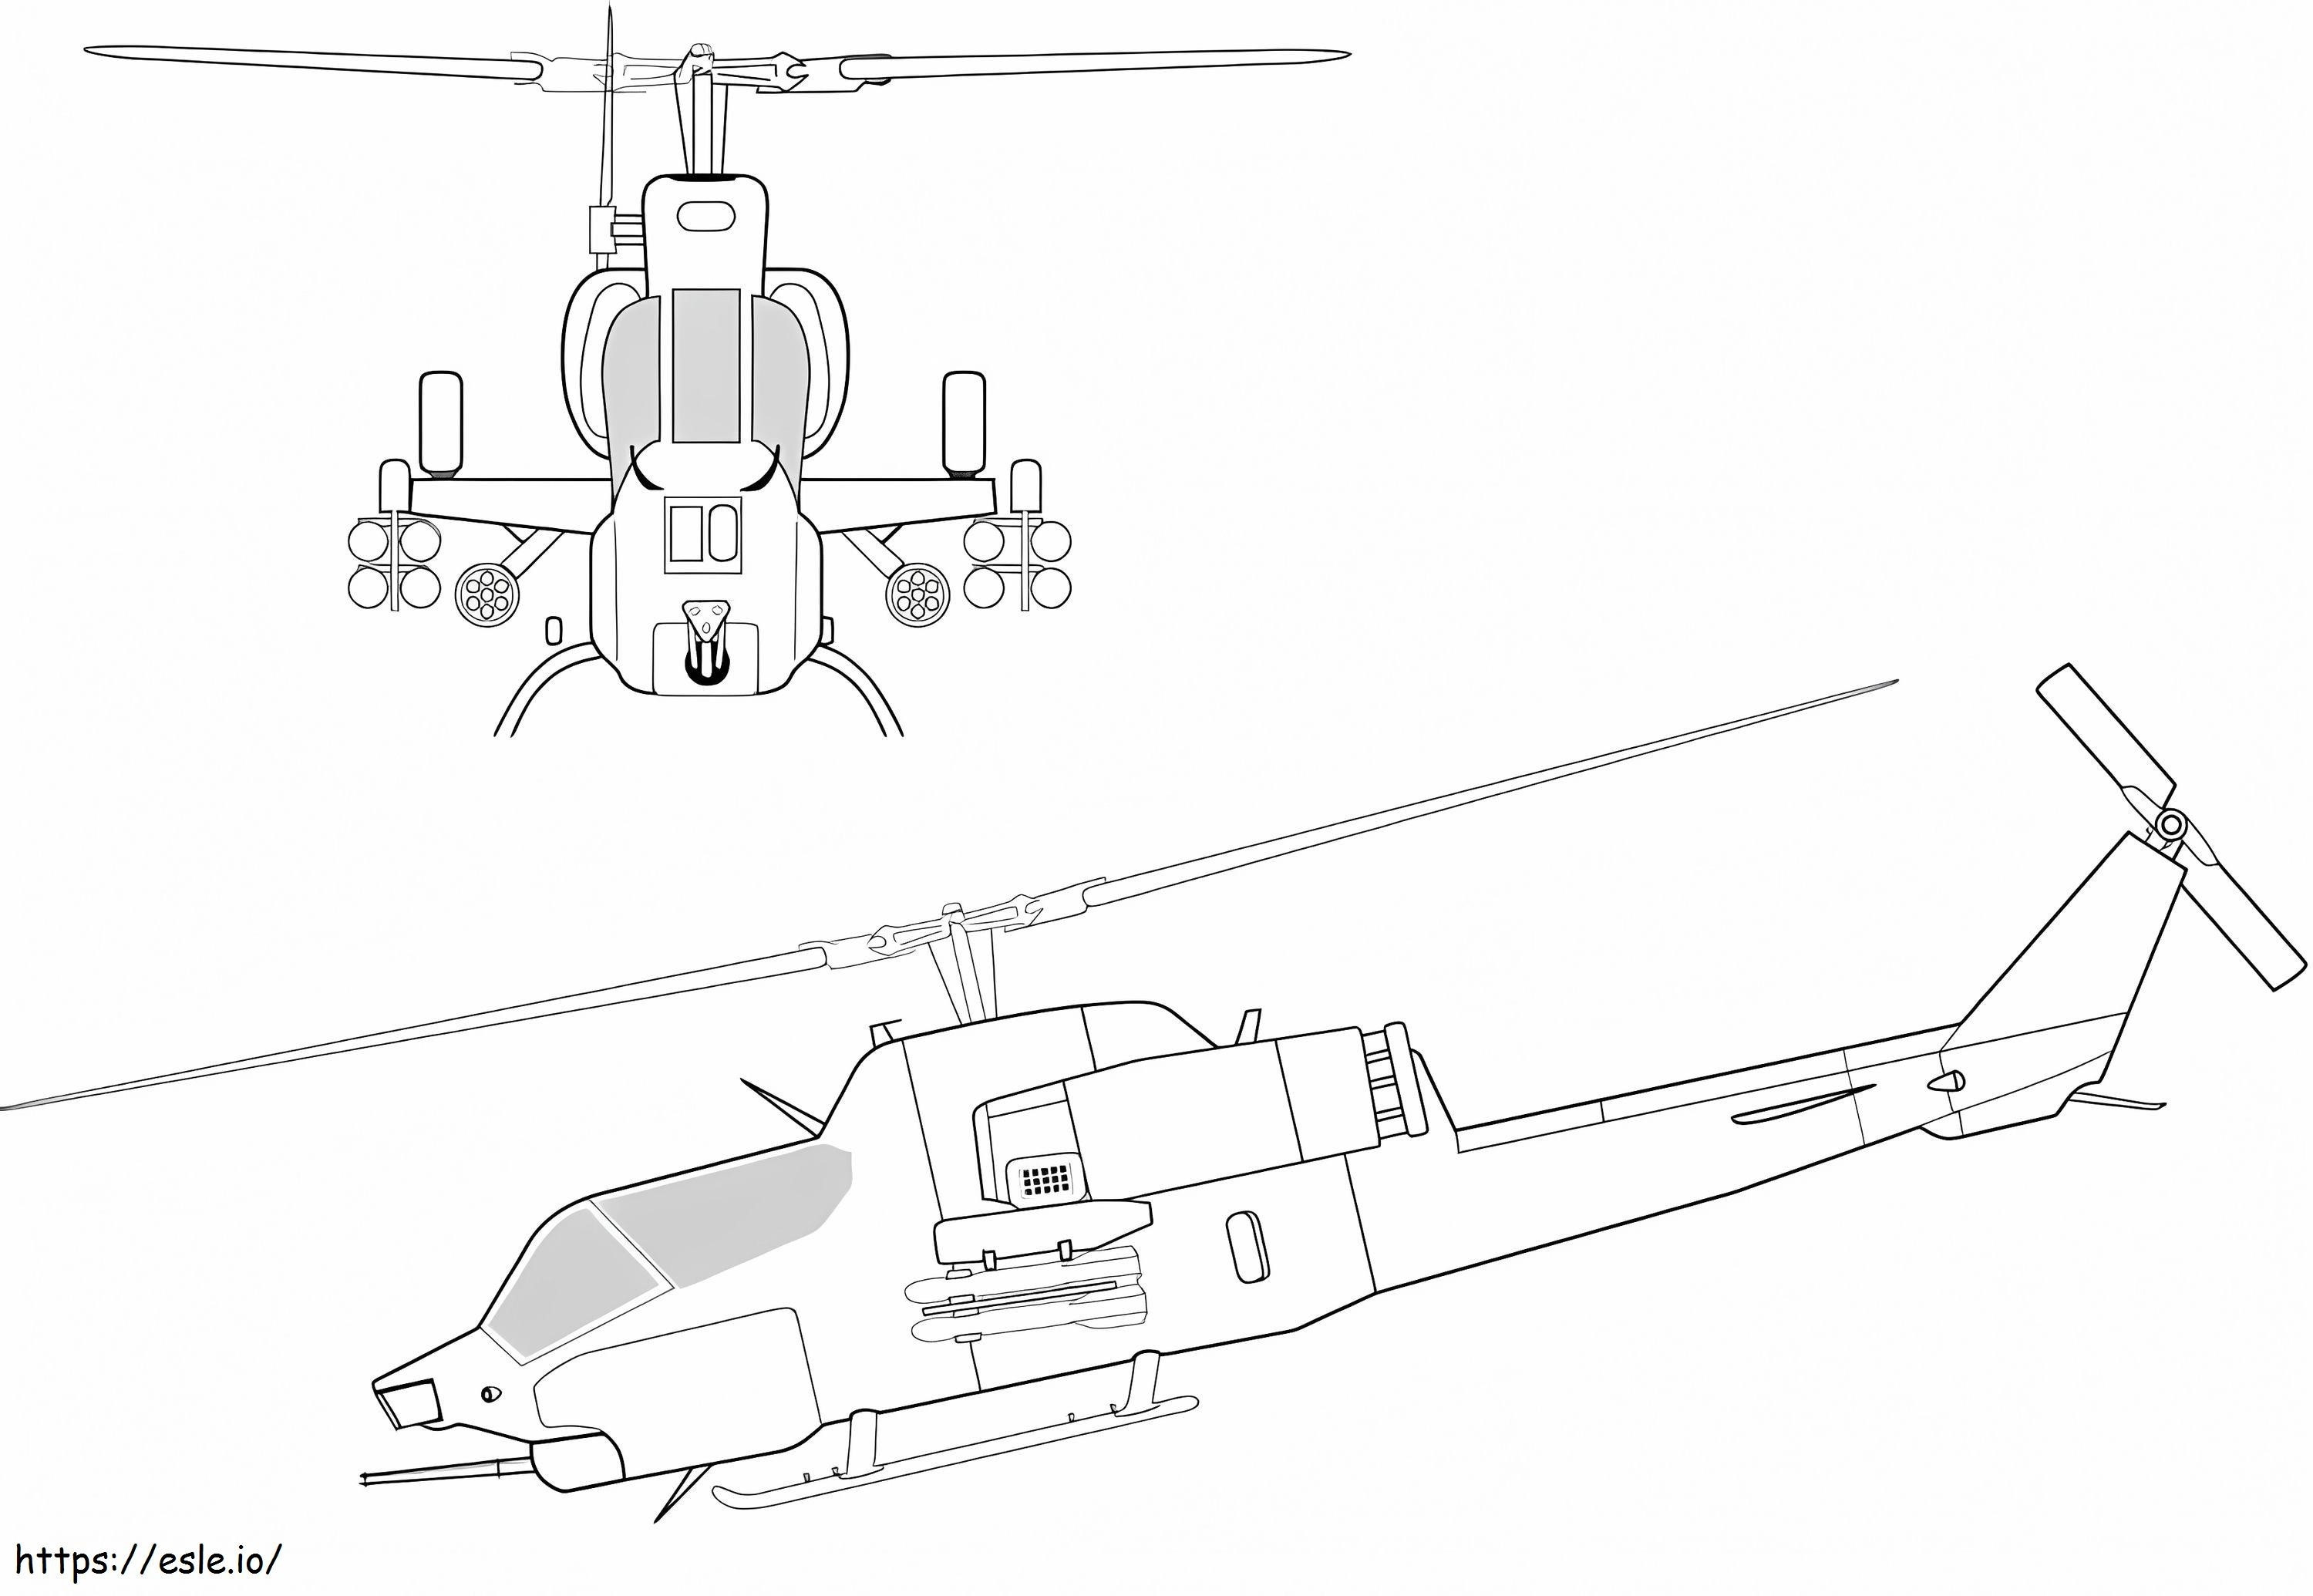 Coloriage Deux hélicoptères à imprimer dessin